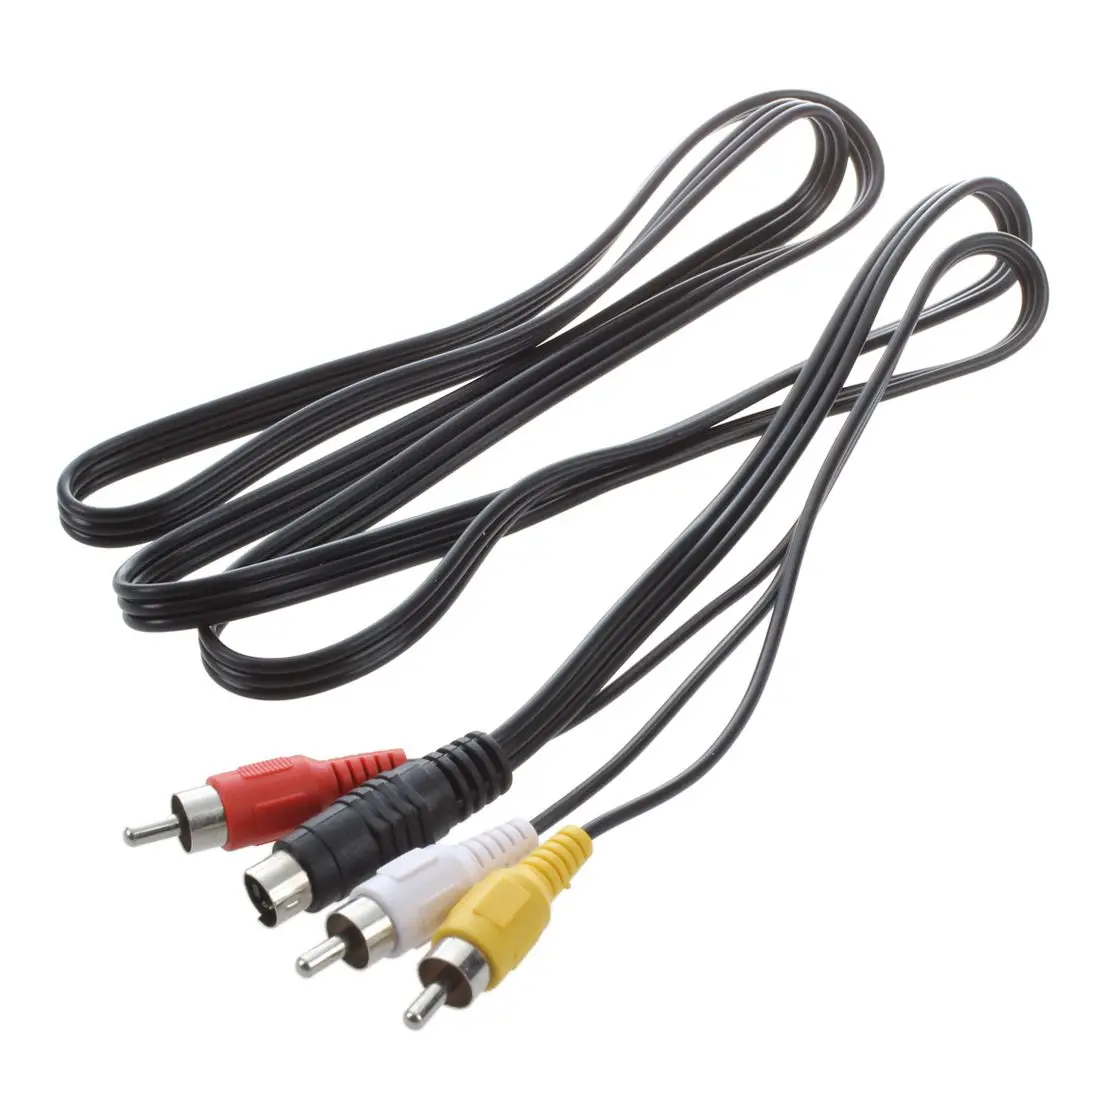 Горячие предложения 1,45 м 4 Pin S-video до 3 RCA мужской композитный кабель черный